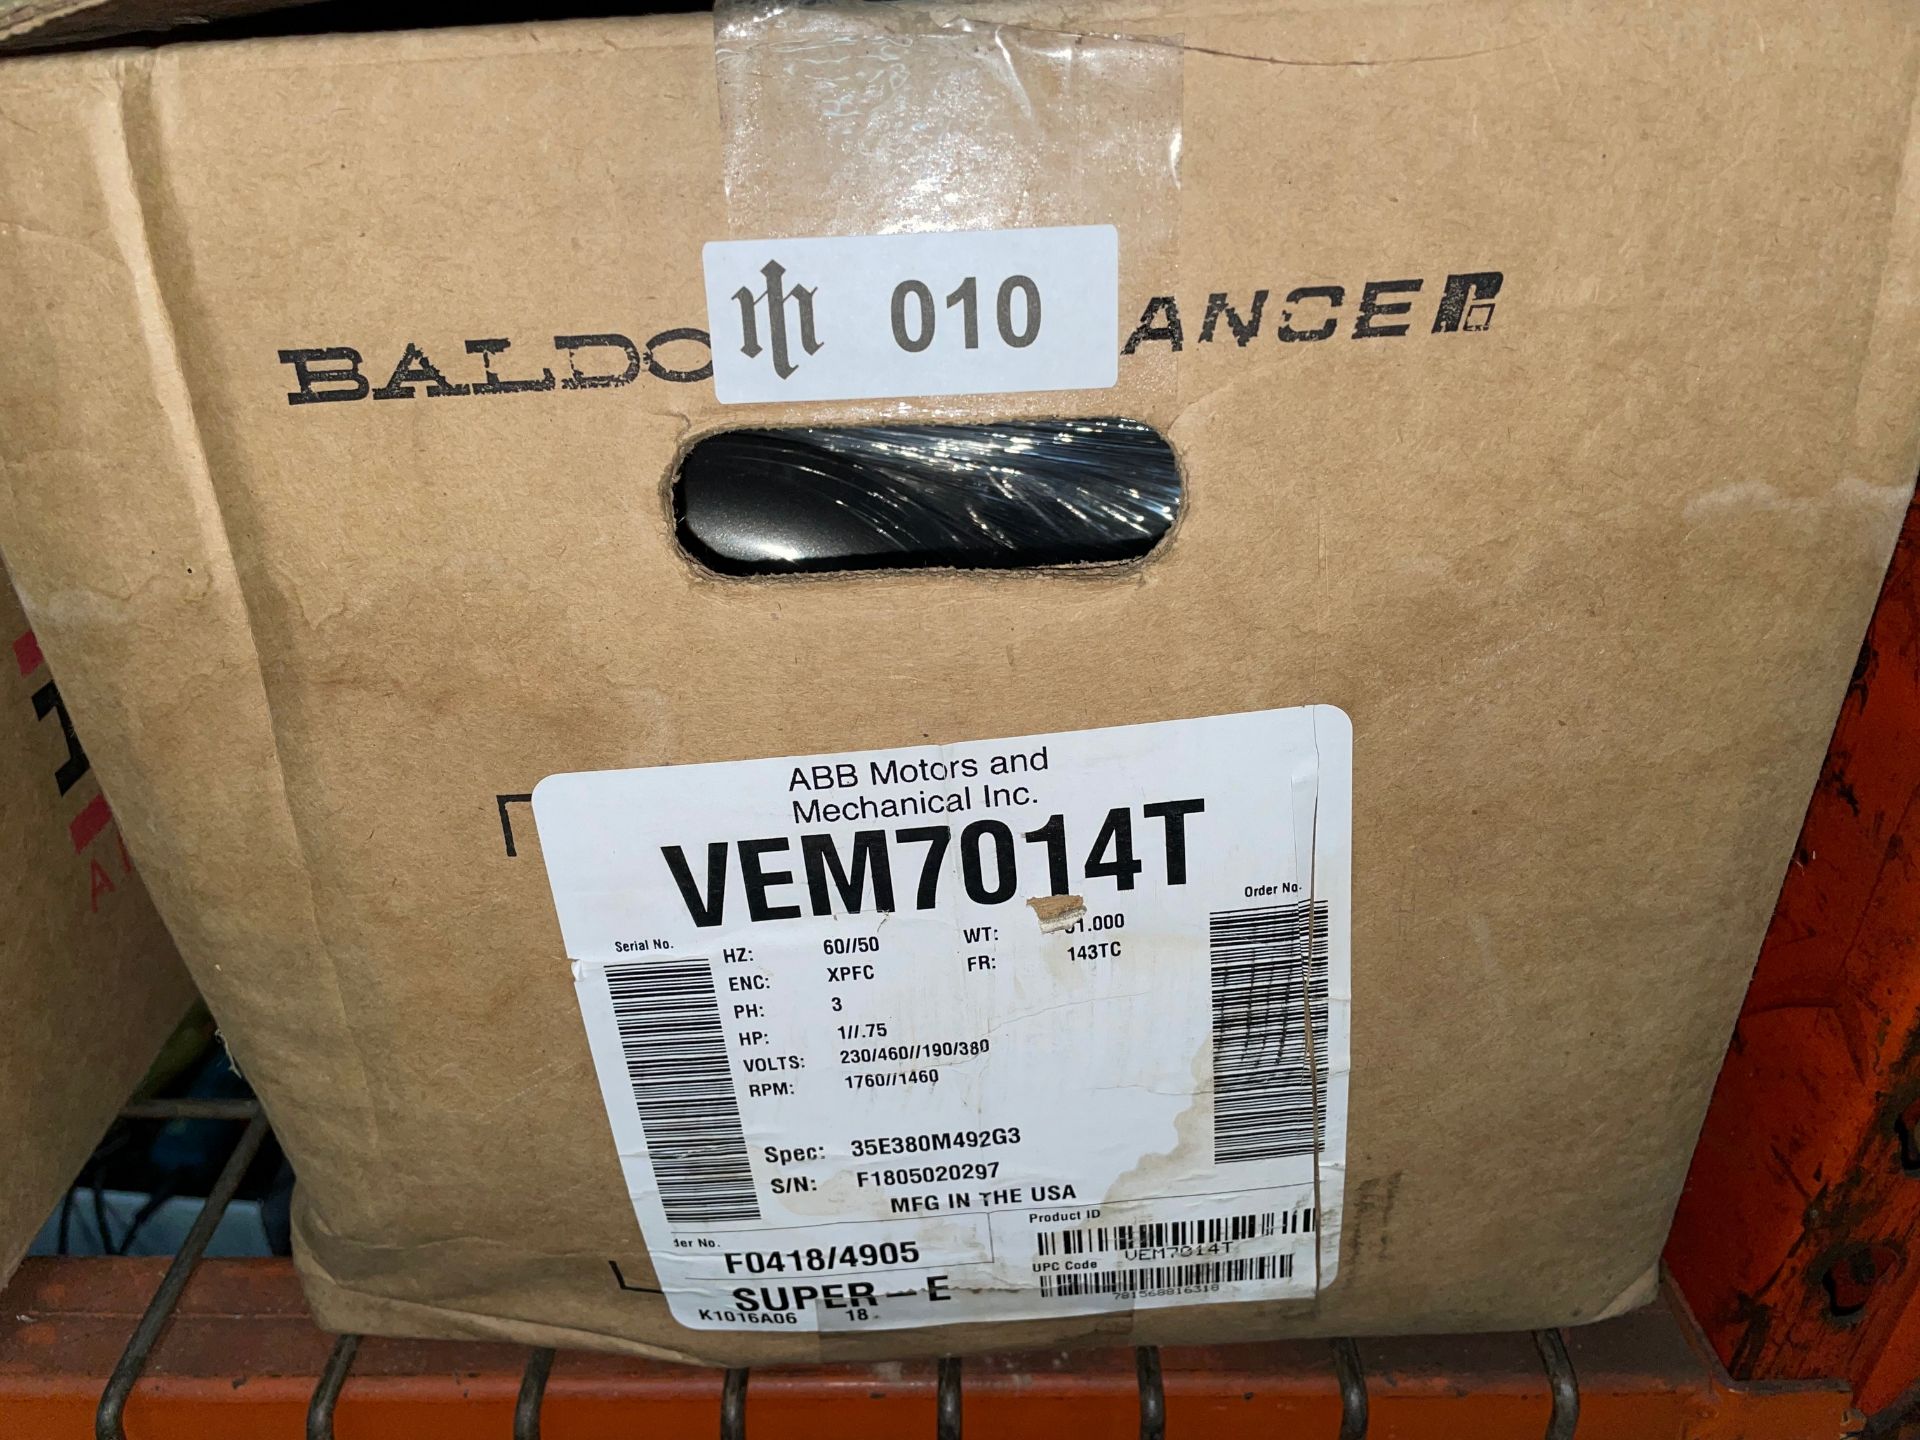 Baldor VEM7014T Explosion Proof Super-E Motor, 1HP - Image 3 of 3